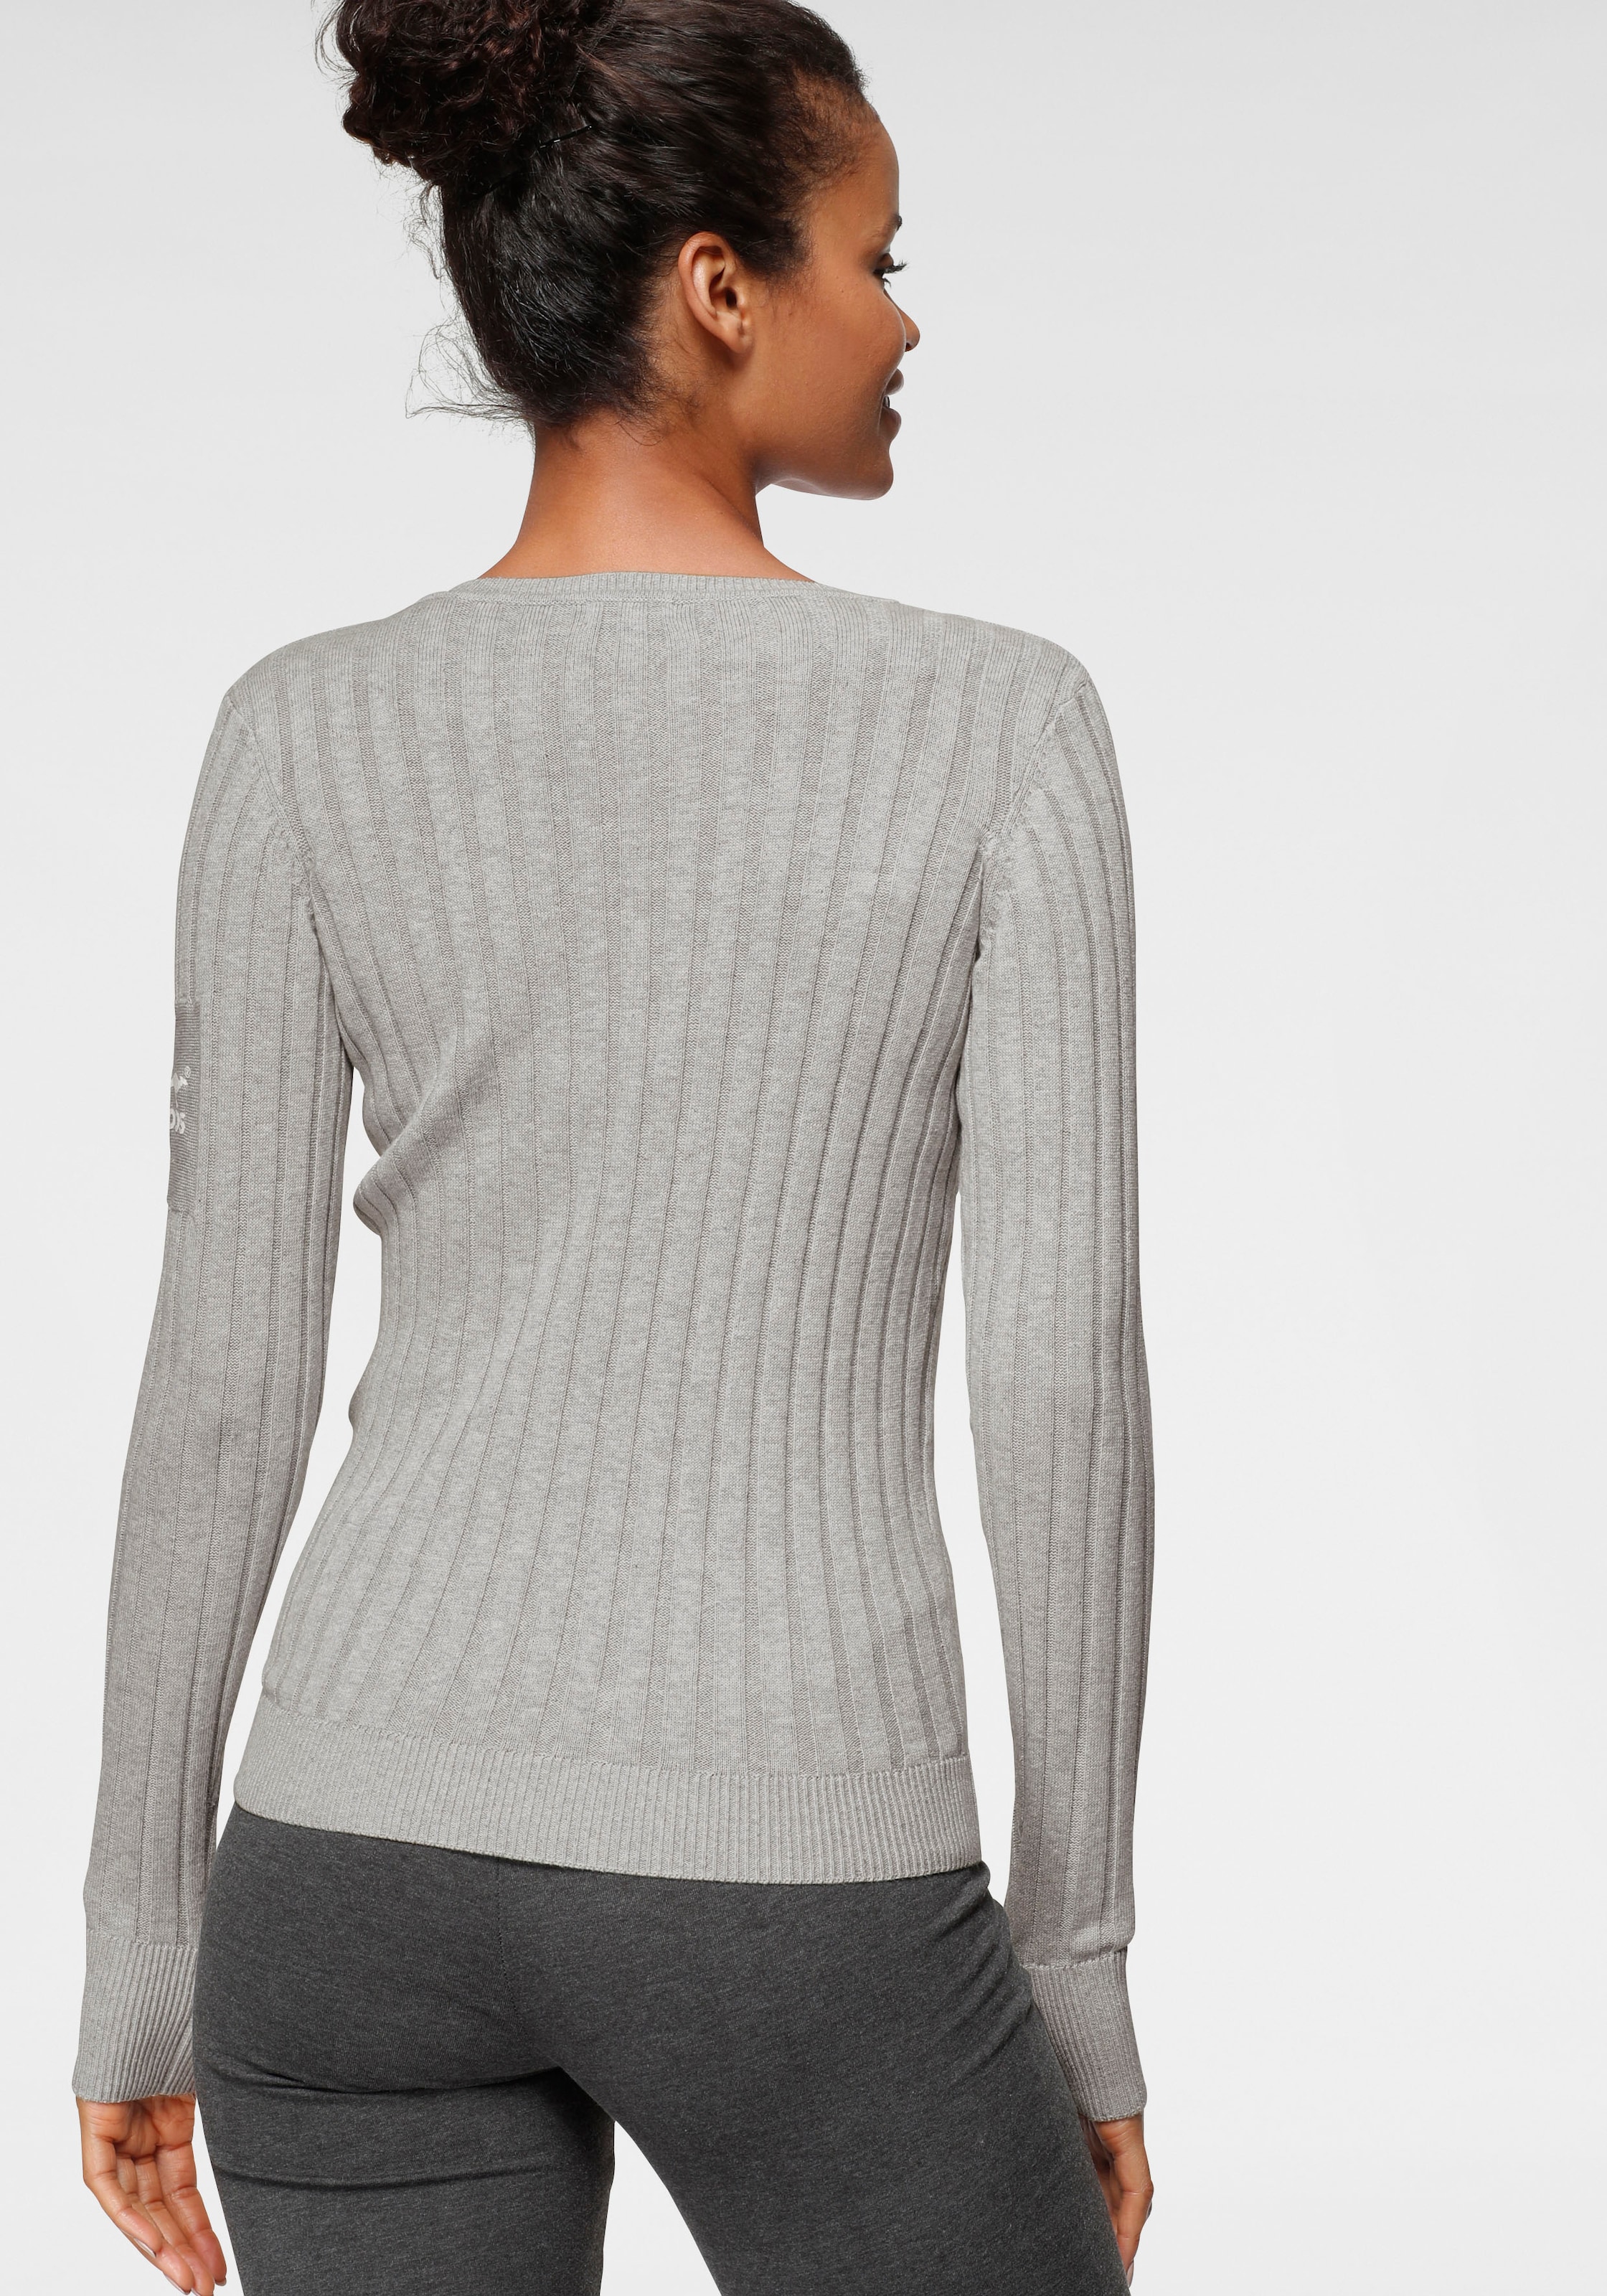 KangaROOS V-Ausschnitt-Pullover, breit shoppen geripptem Feinstrick in